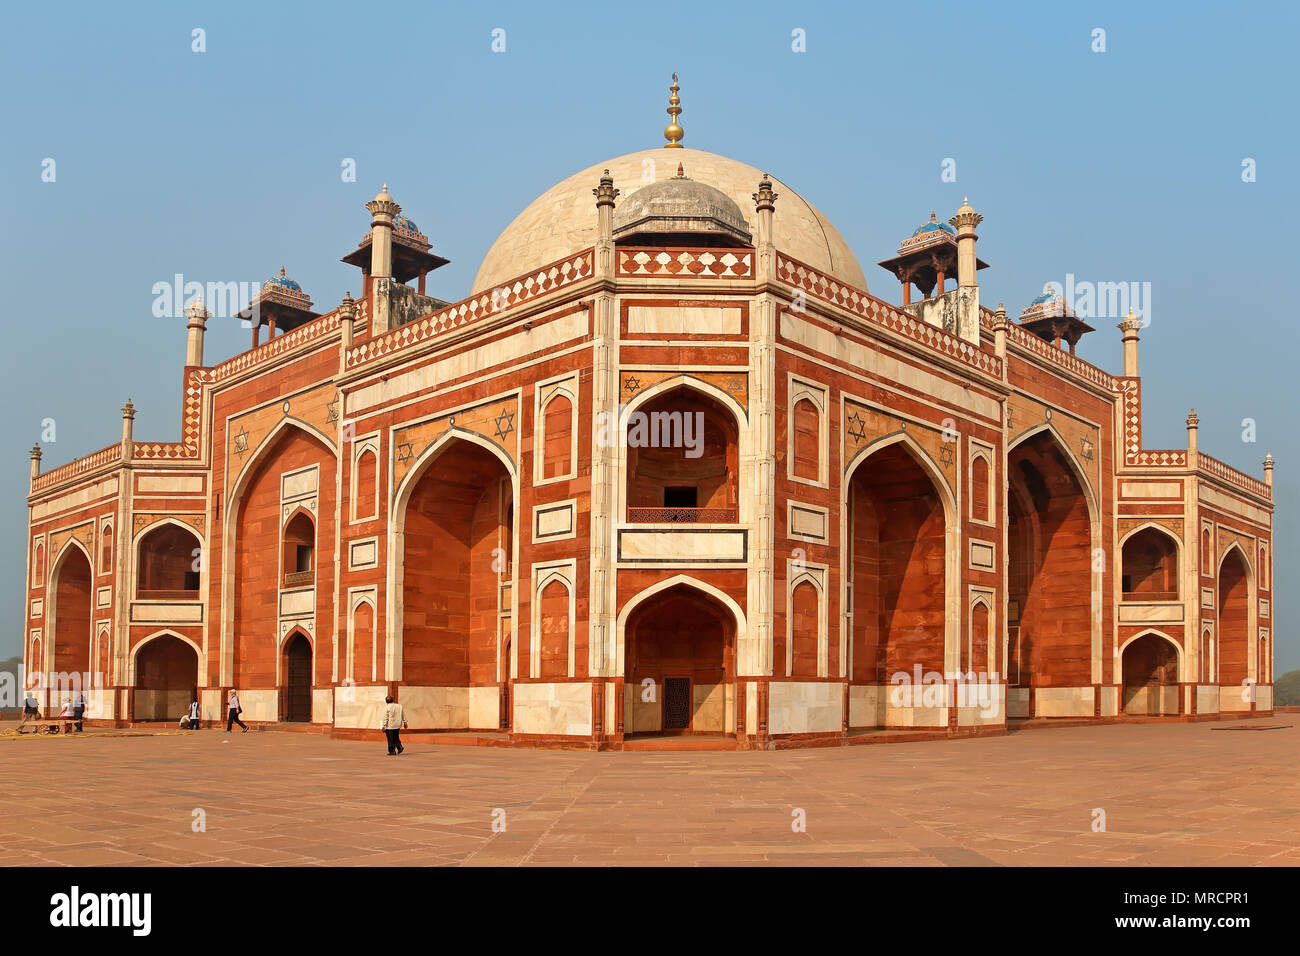 Delhi, India - 23 Novembre 2015: la storica Humayuns tomba - un sito patrimonio mondiale dell'UNESCO - con visita dei turisti Foto Stock